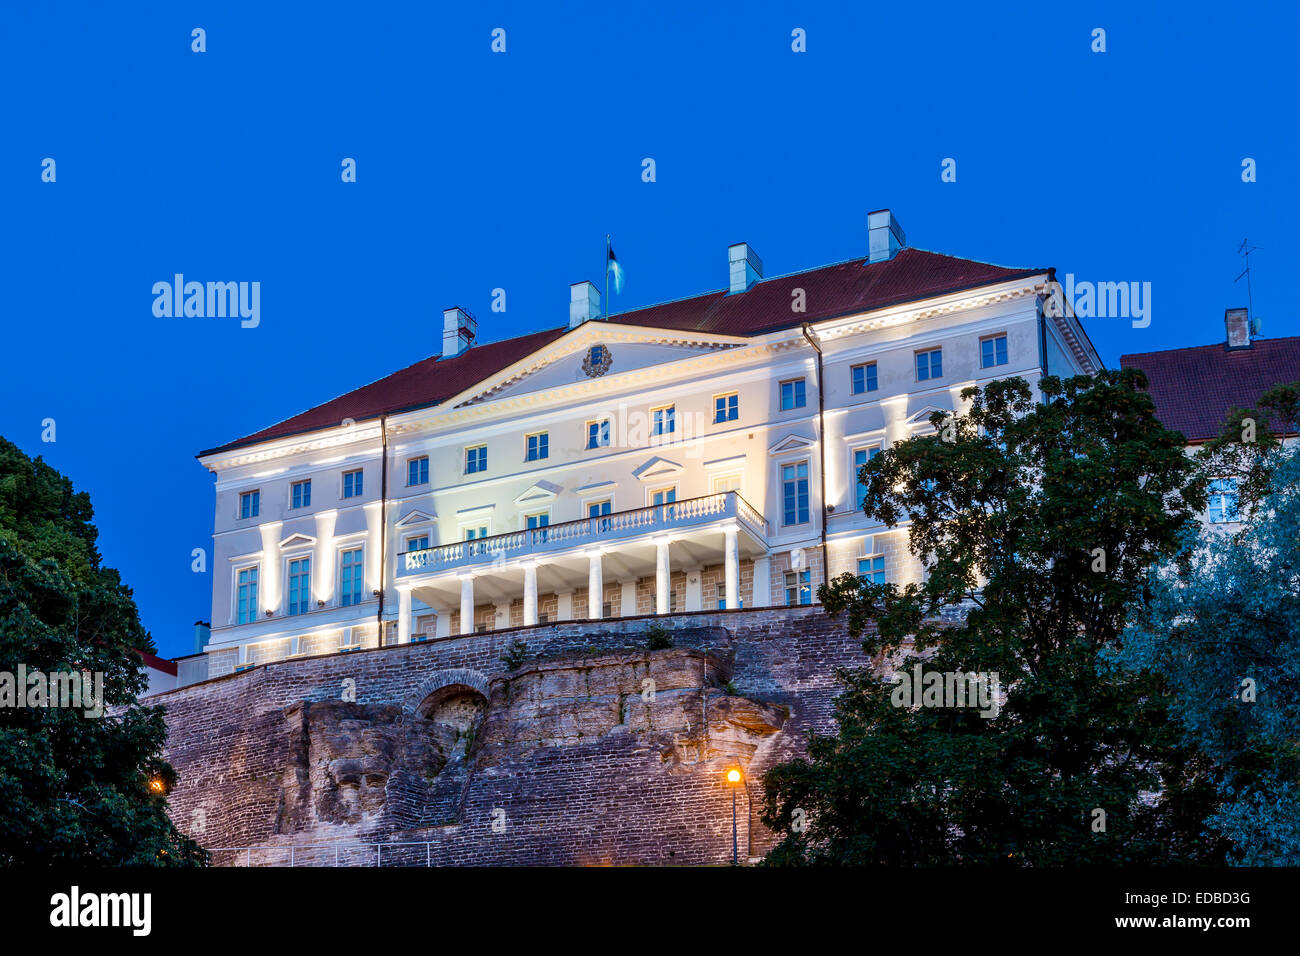 Maison Stenbocki ou Stenbock maja, le siège du gouvernement estonien, à l'heure bleue, Tallinn, Estonie Banque D'Images